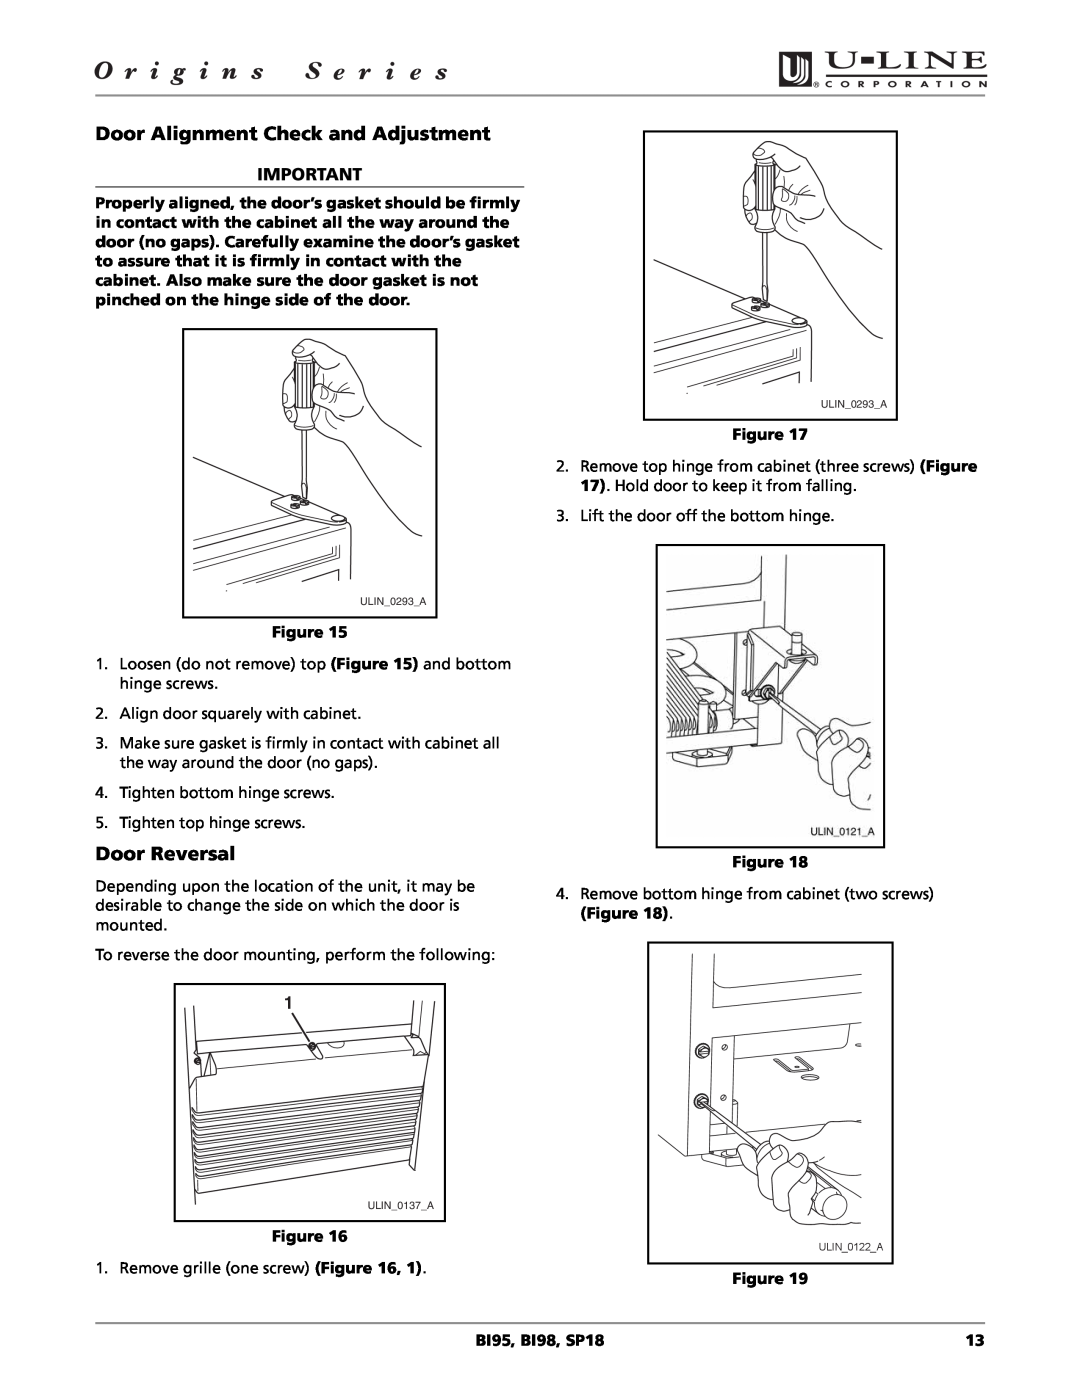 U-Line BI98, SP18, BI95 manual Door Alignment Check and Adjustment, Door Reversal 